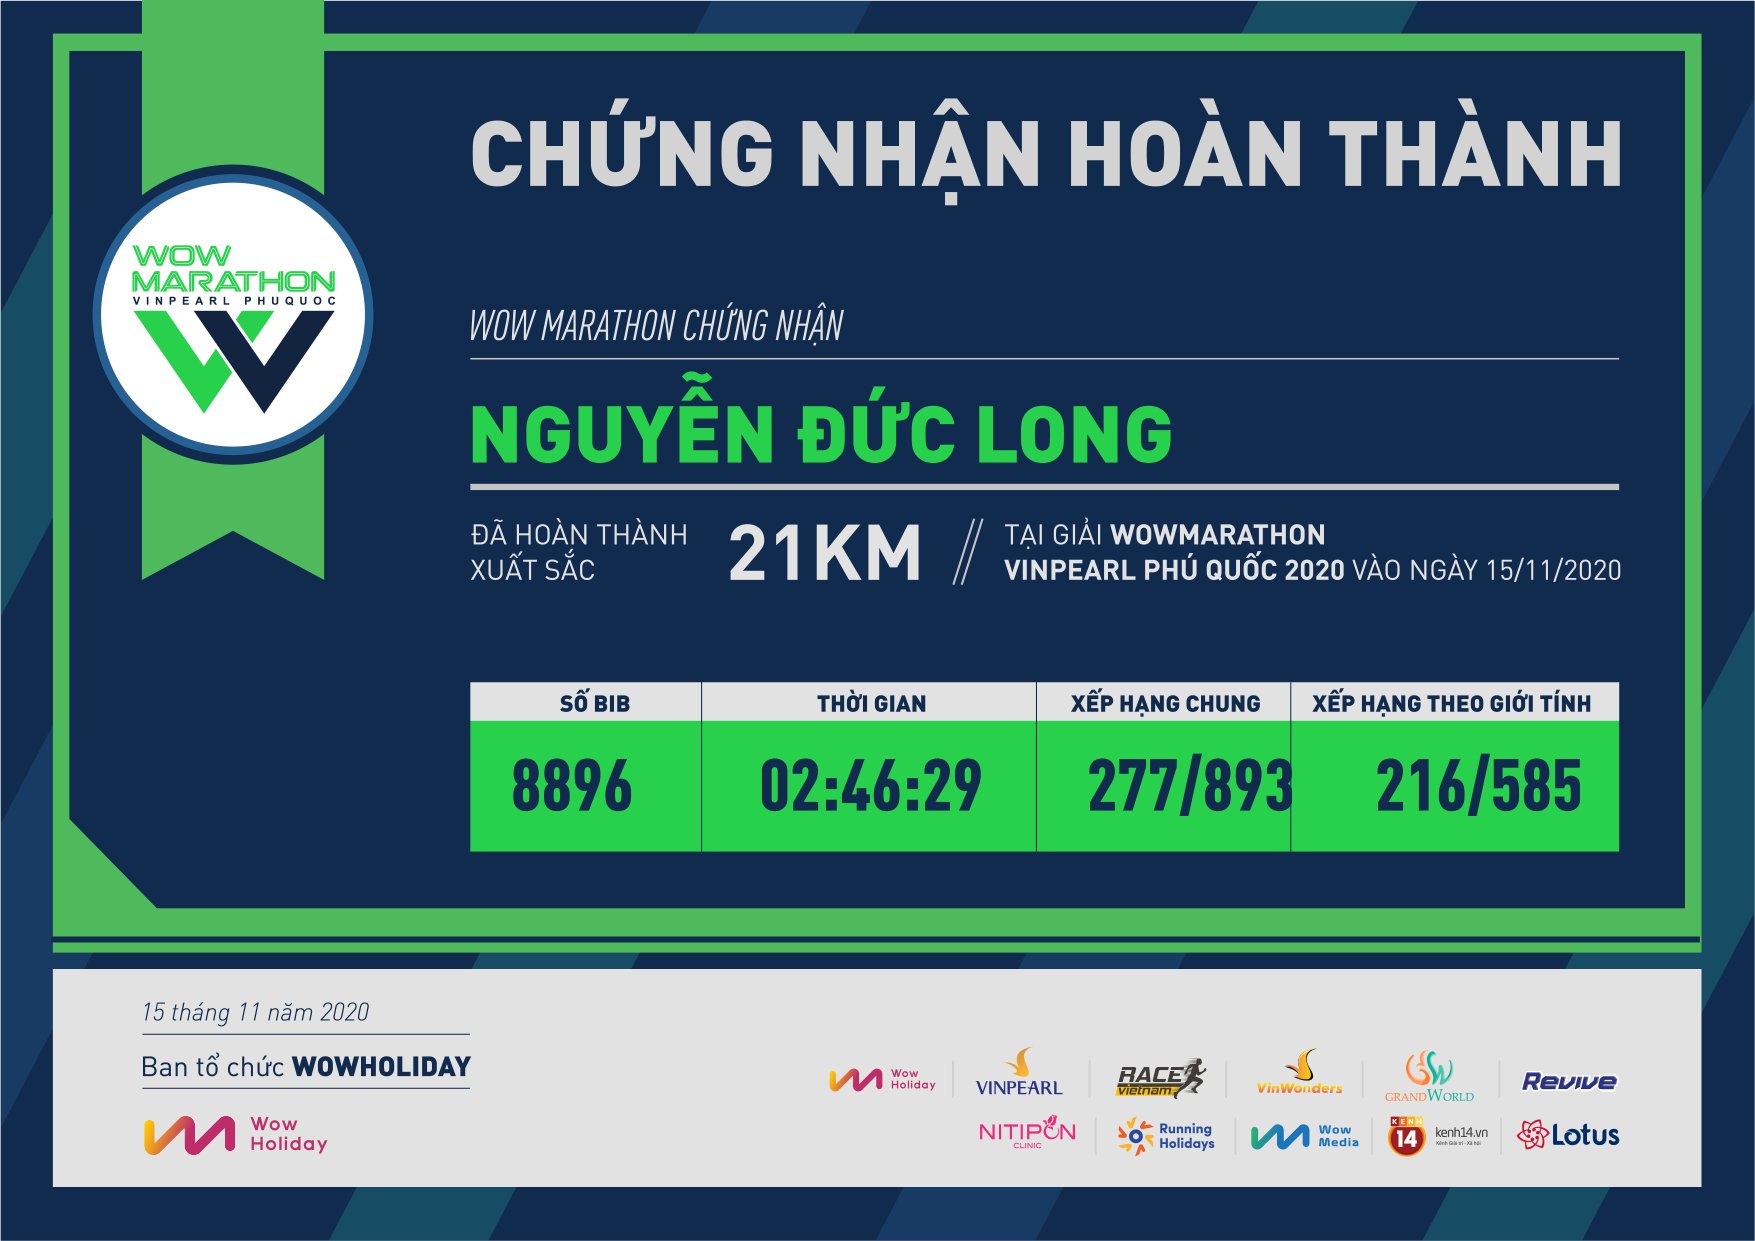 8896 - Nguyễn Đức Long